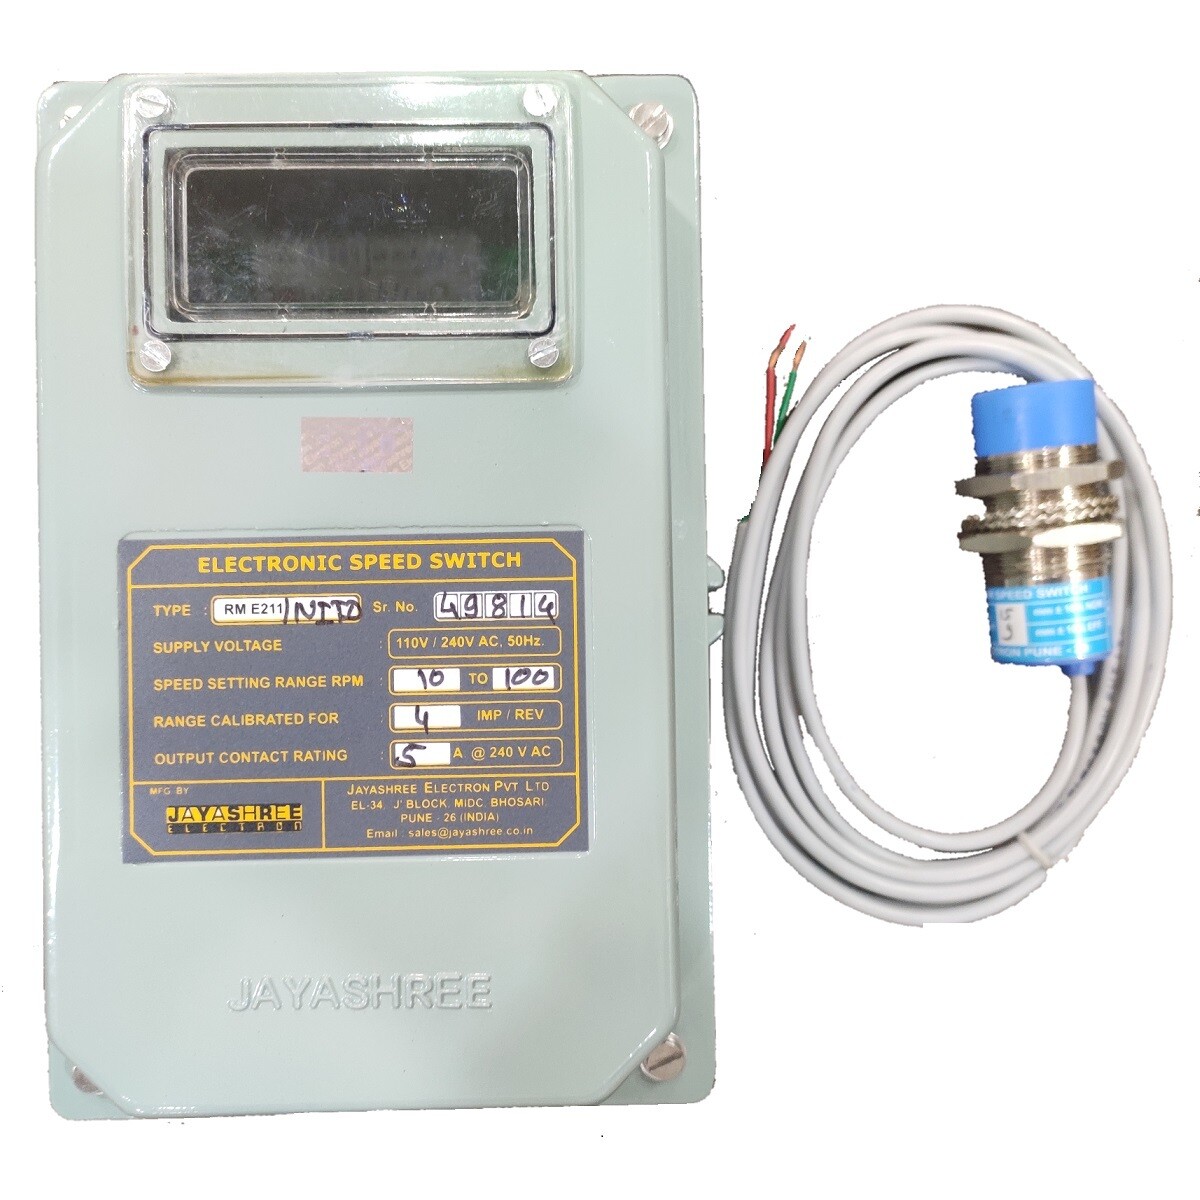 Jayashree RME211 / NITD - Zero Speed Switch